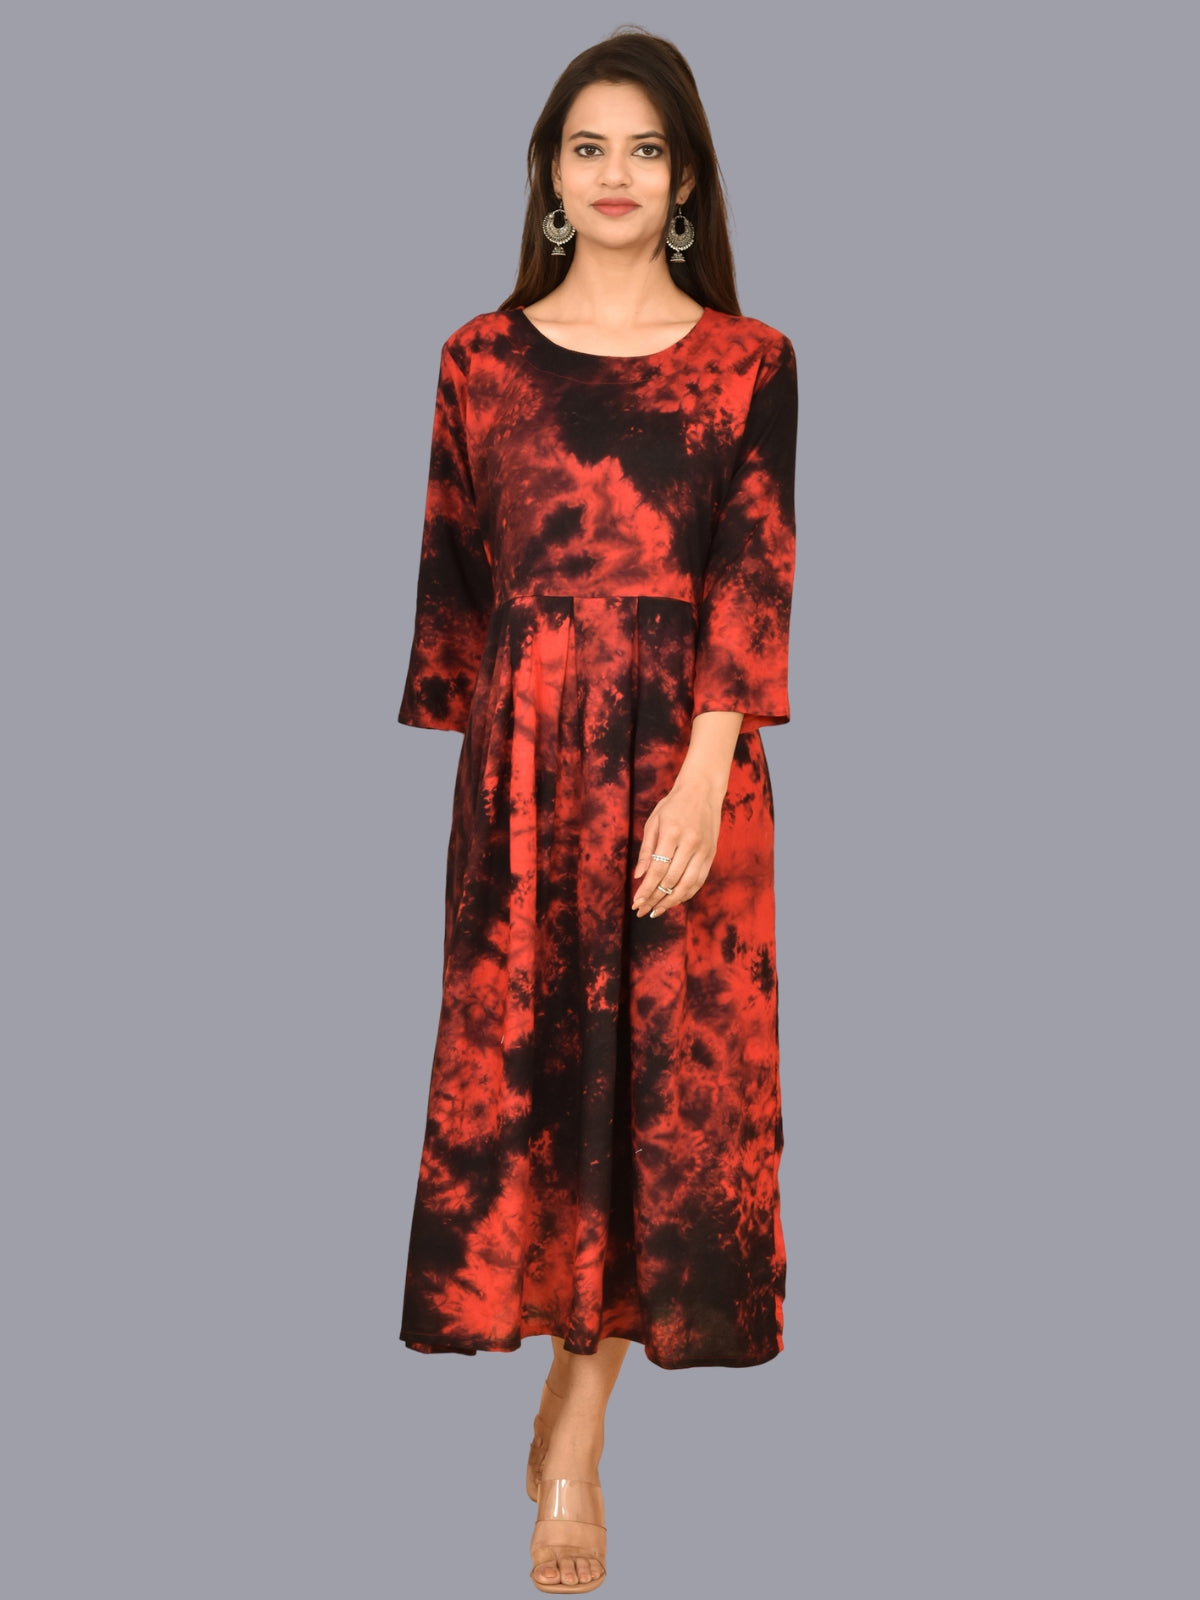 Women Red Tie Dye Long Dress Rayon 3/4 Sleeve Dress